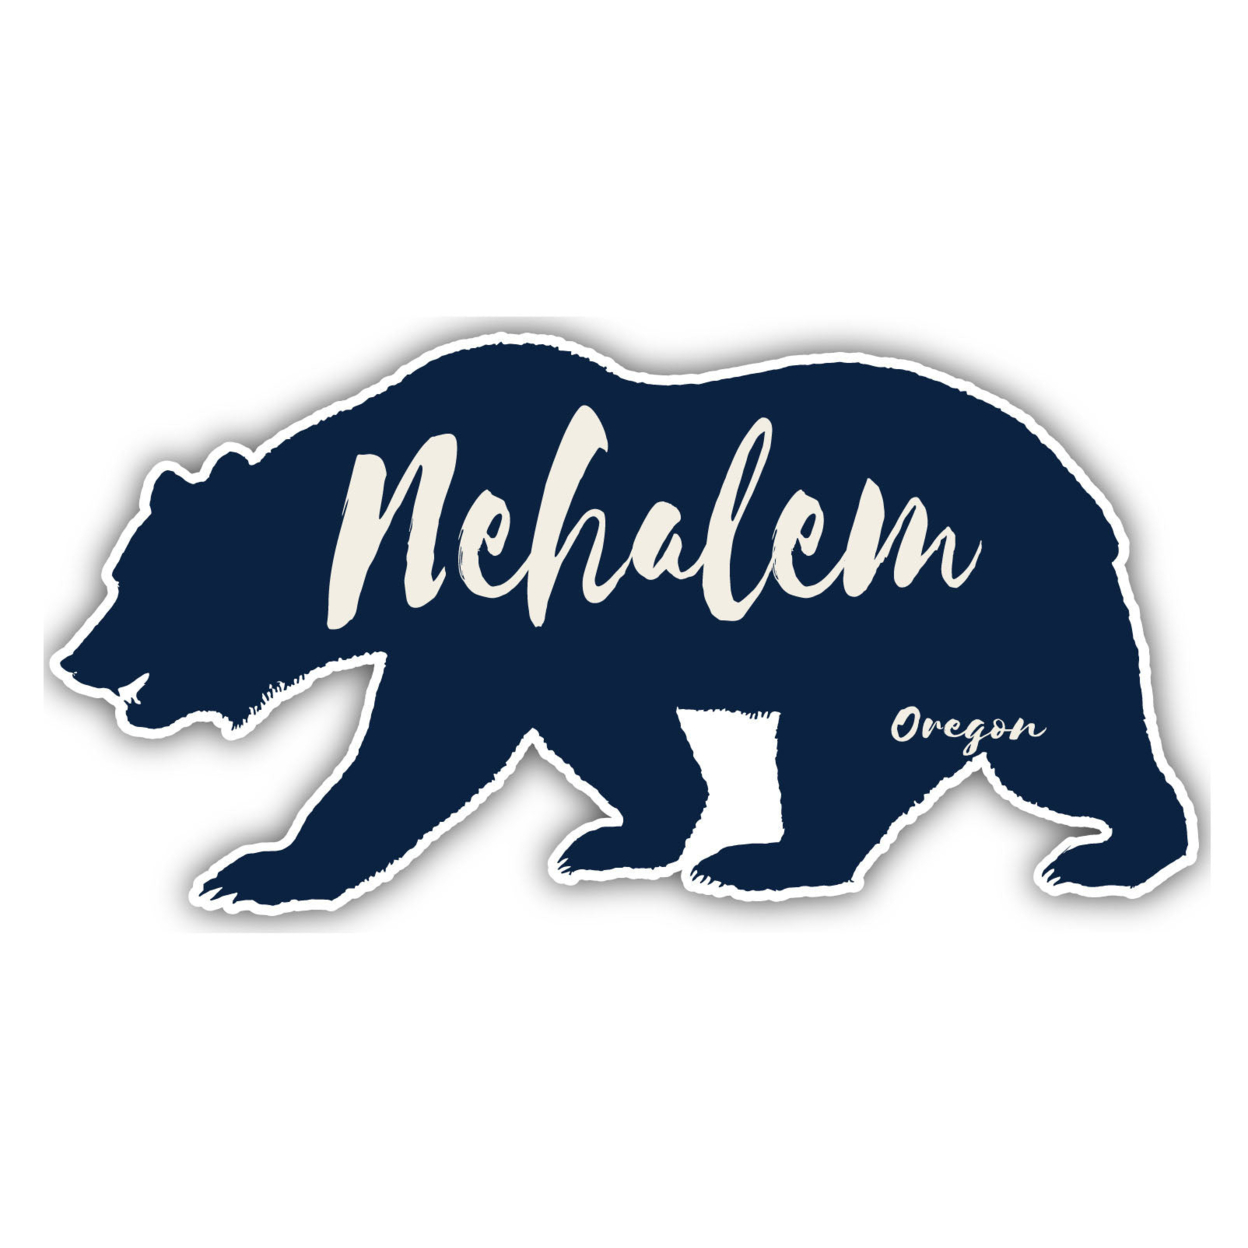 Nehalem Oregon Souvenir Decorative Stickers (Choose Theme And Size) - Single Unit, 2-Inch, Camp Life